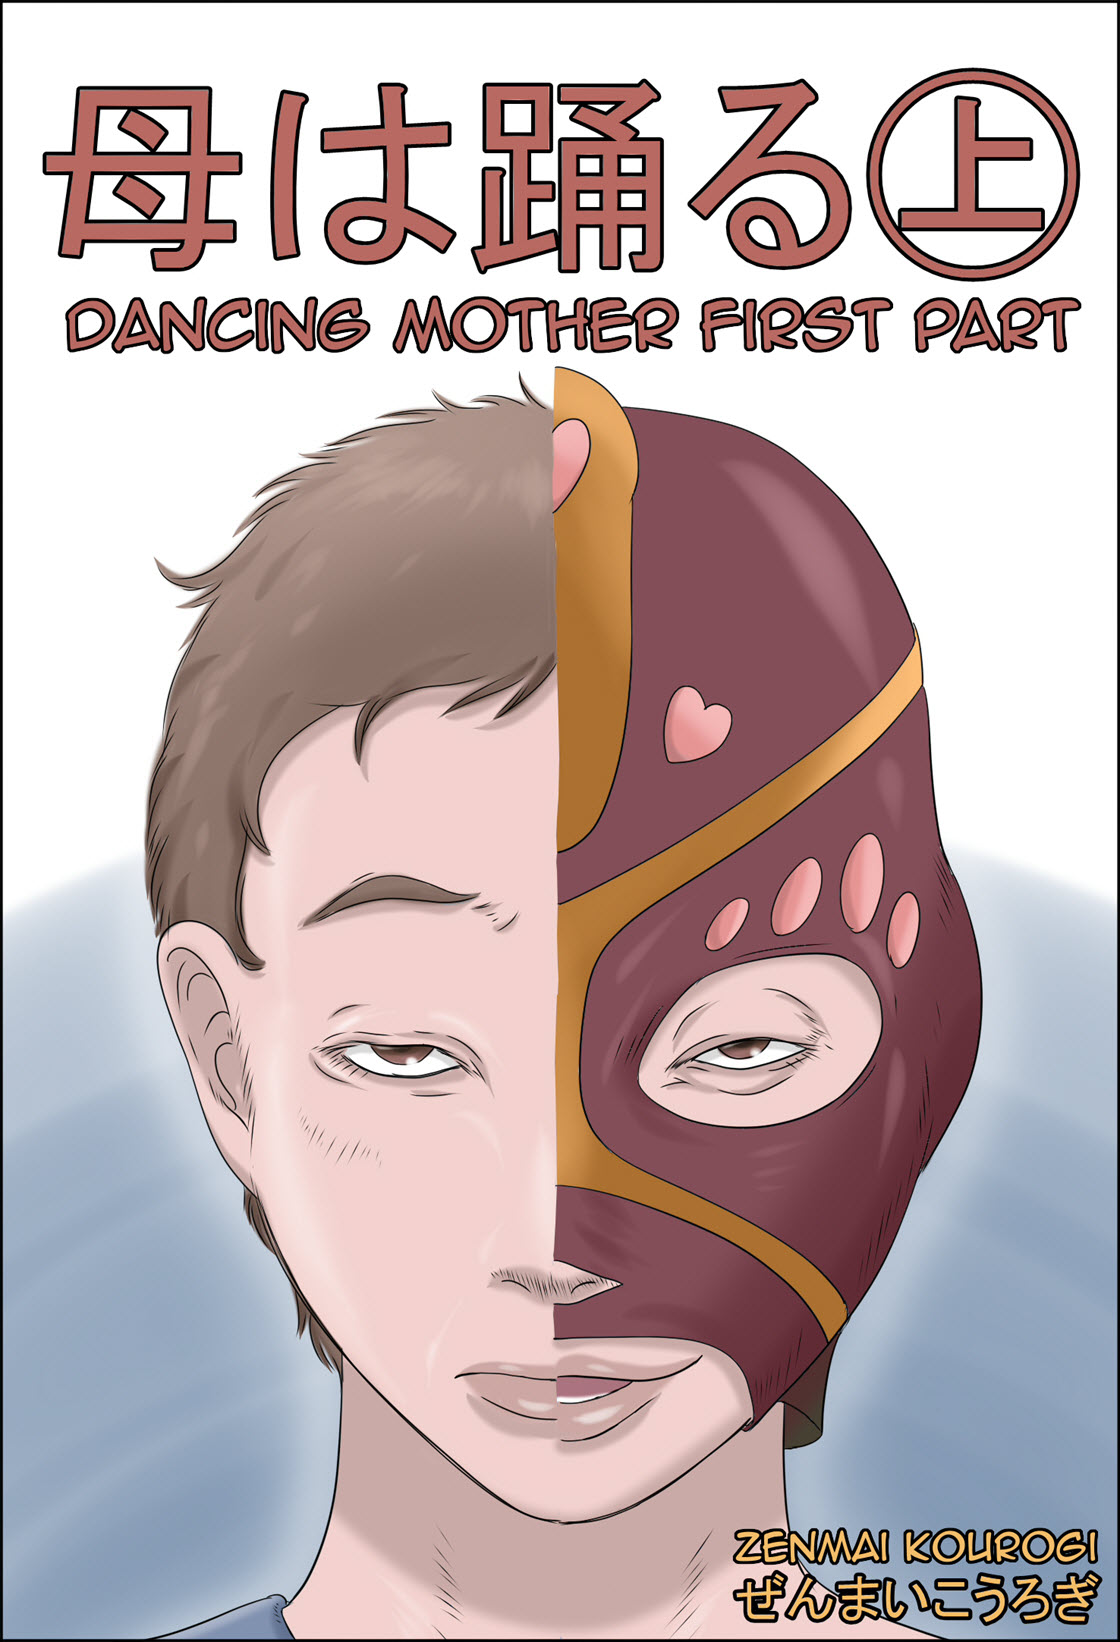 [Zenmai Kourogi] Dancing Mother Vol.1 Part 1 Hentai Comic